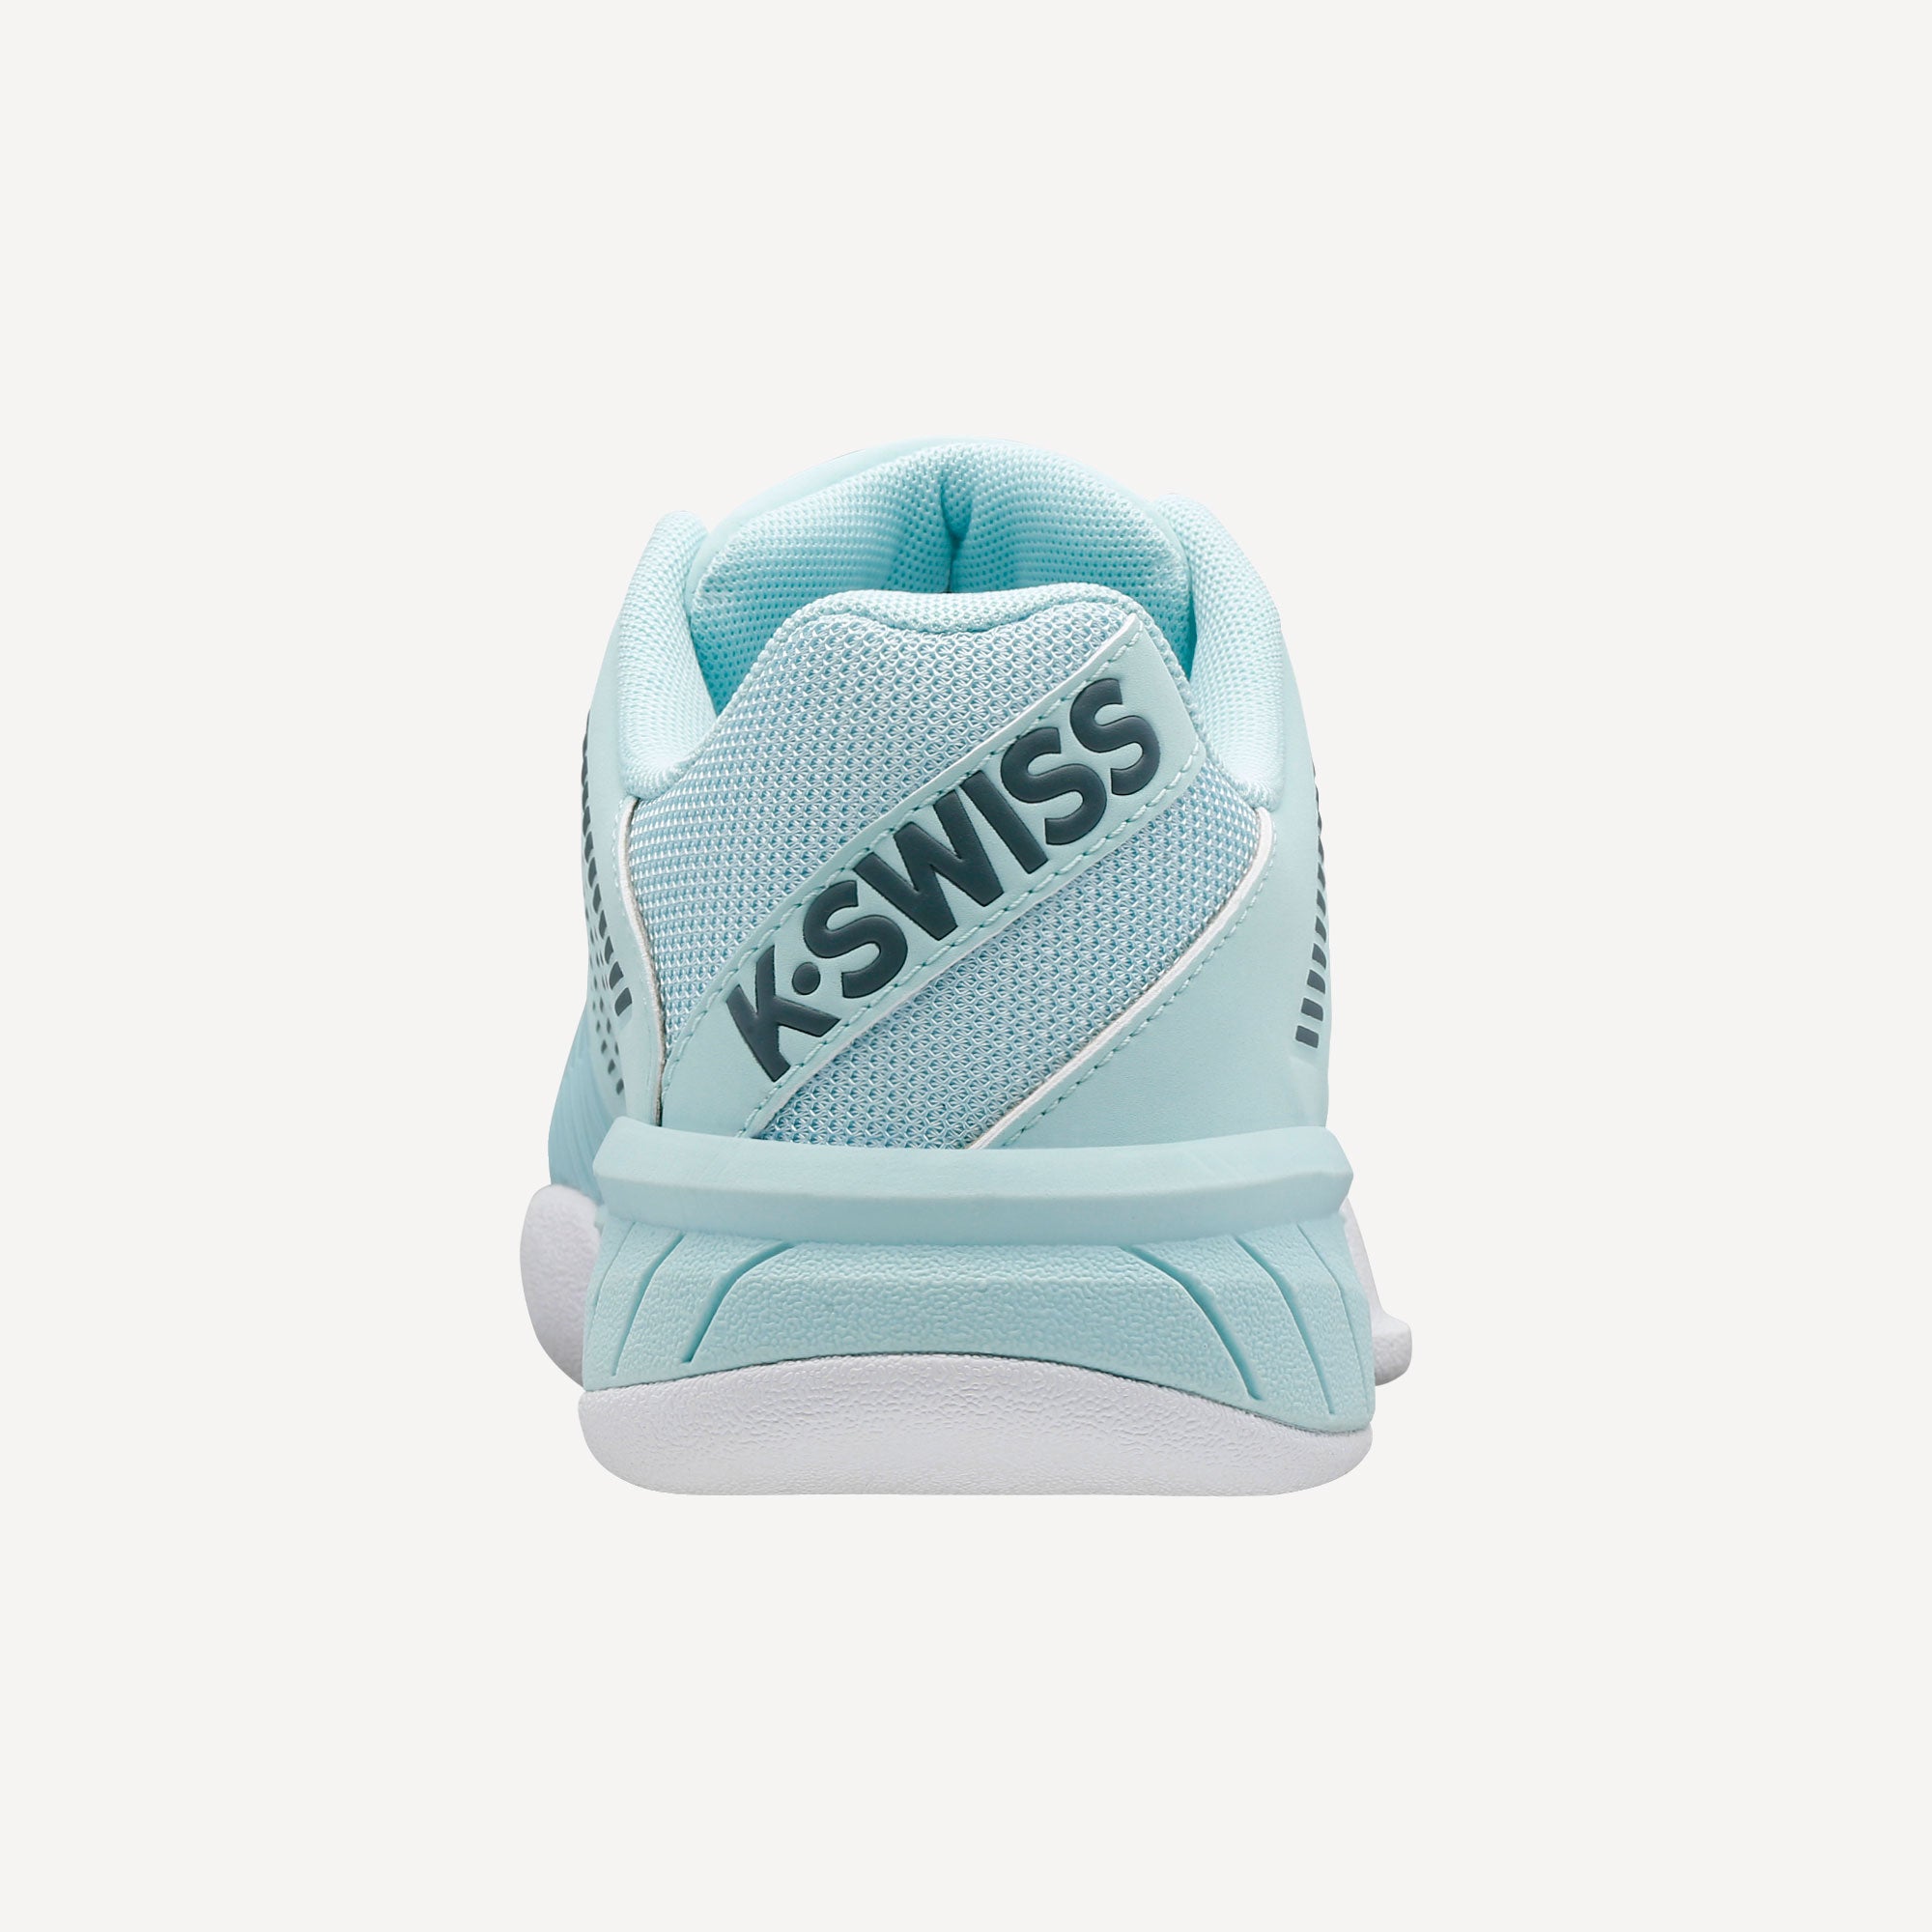 K-Swiss Express Light 2 Women's Carpet Tennis Shoes Blue (7)